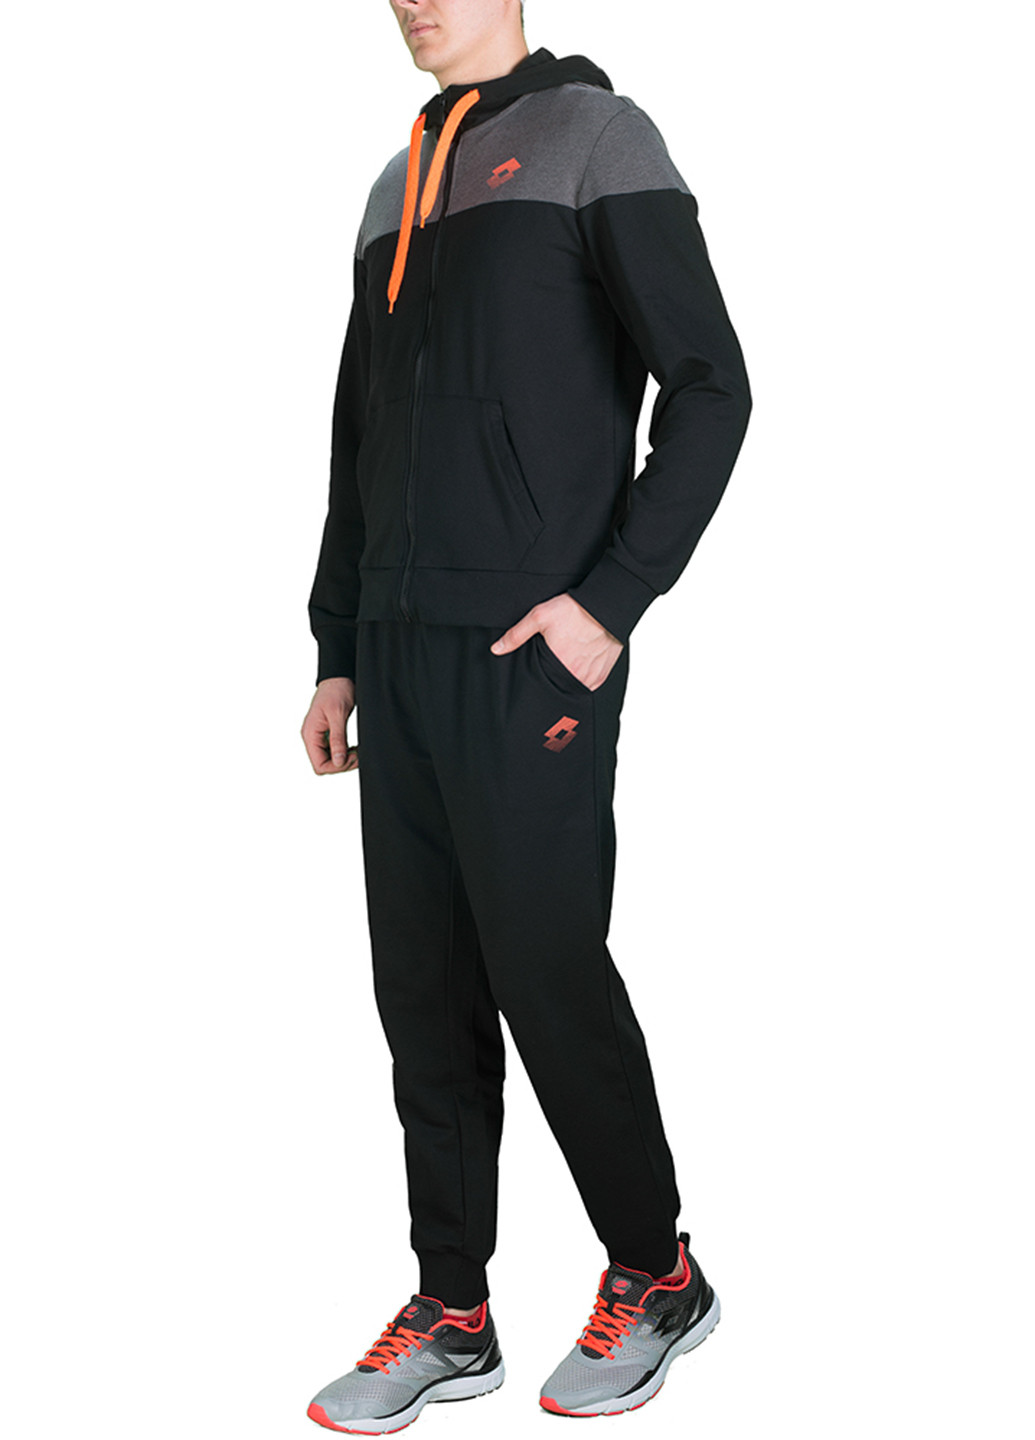 Черный демисезонный костюм (толстовка, брюки) брючный Lotto